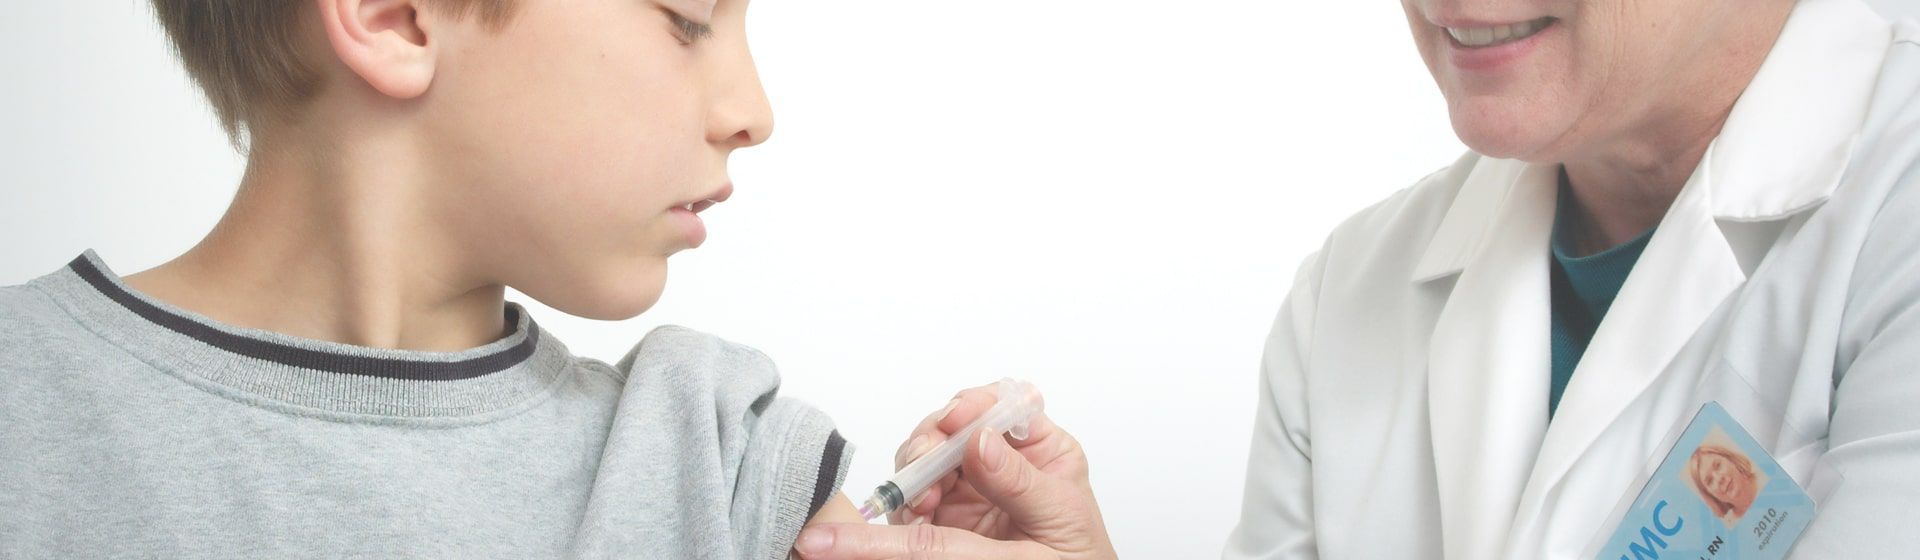 Masernimpfpflicht in Deutschland tritt ab 1. März 2020 in Kraft